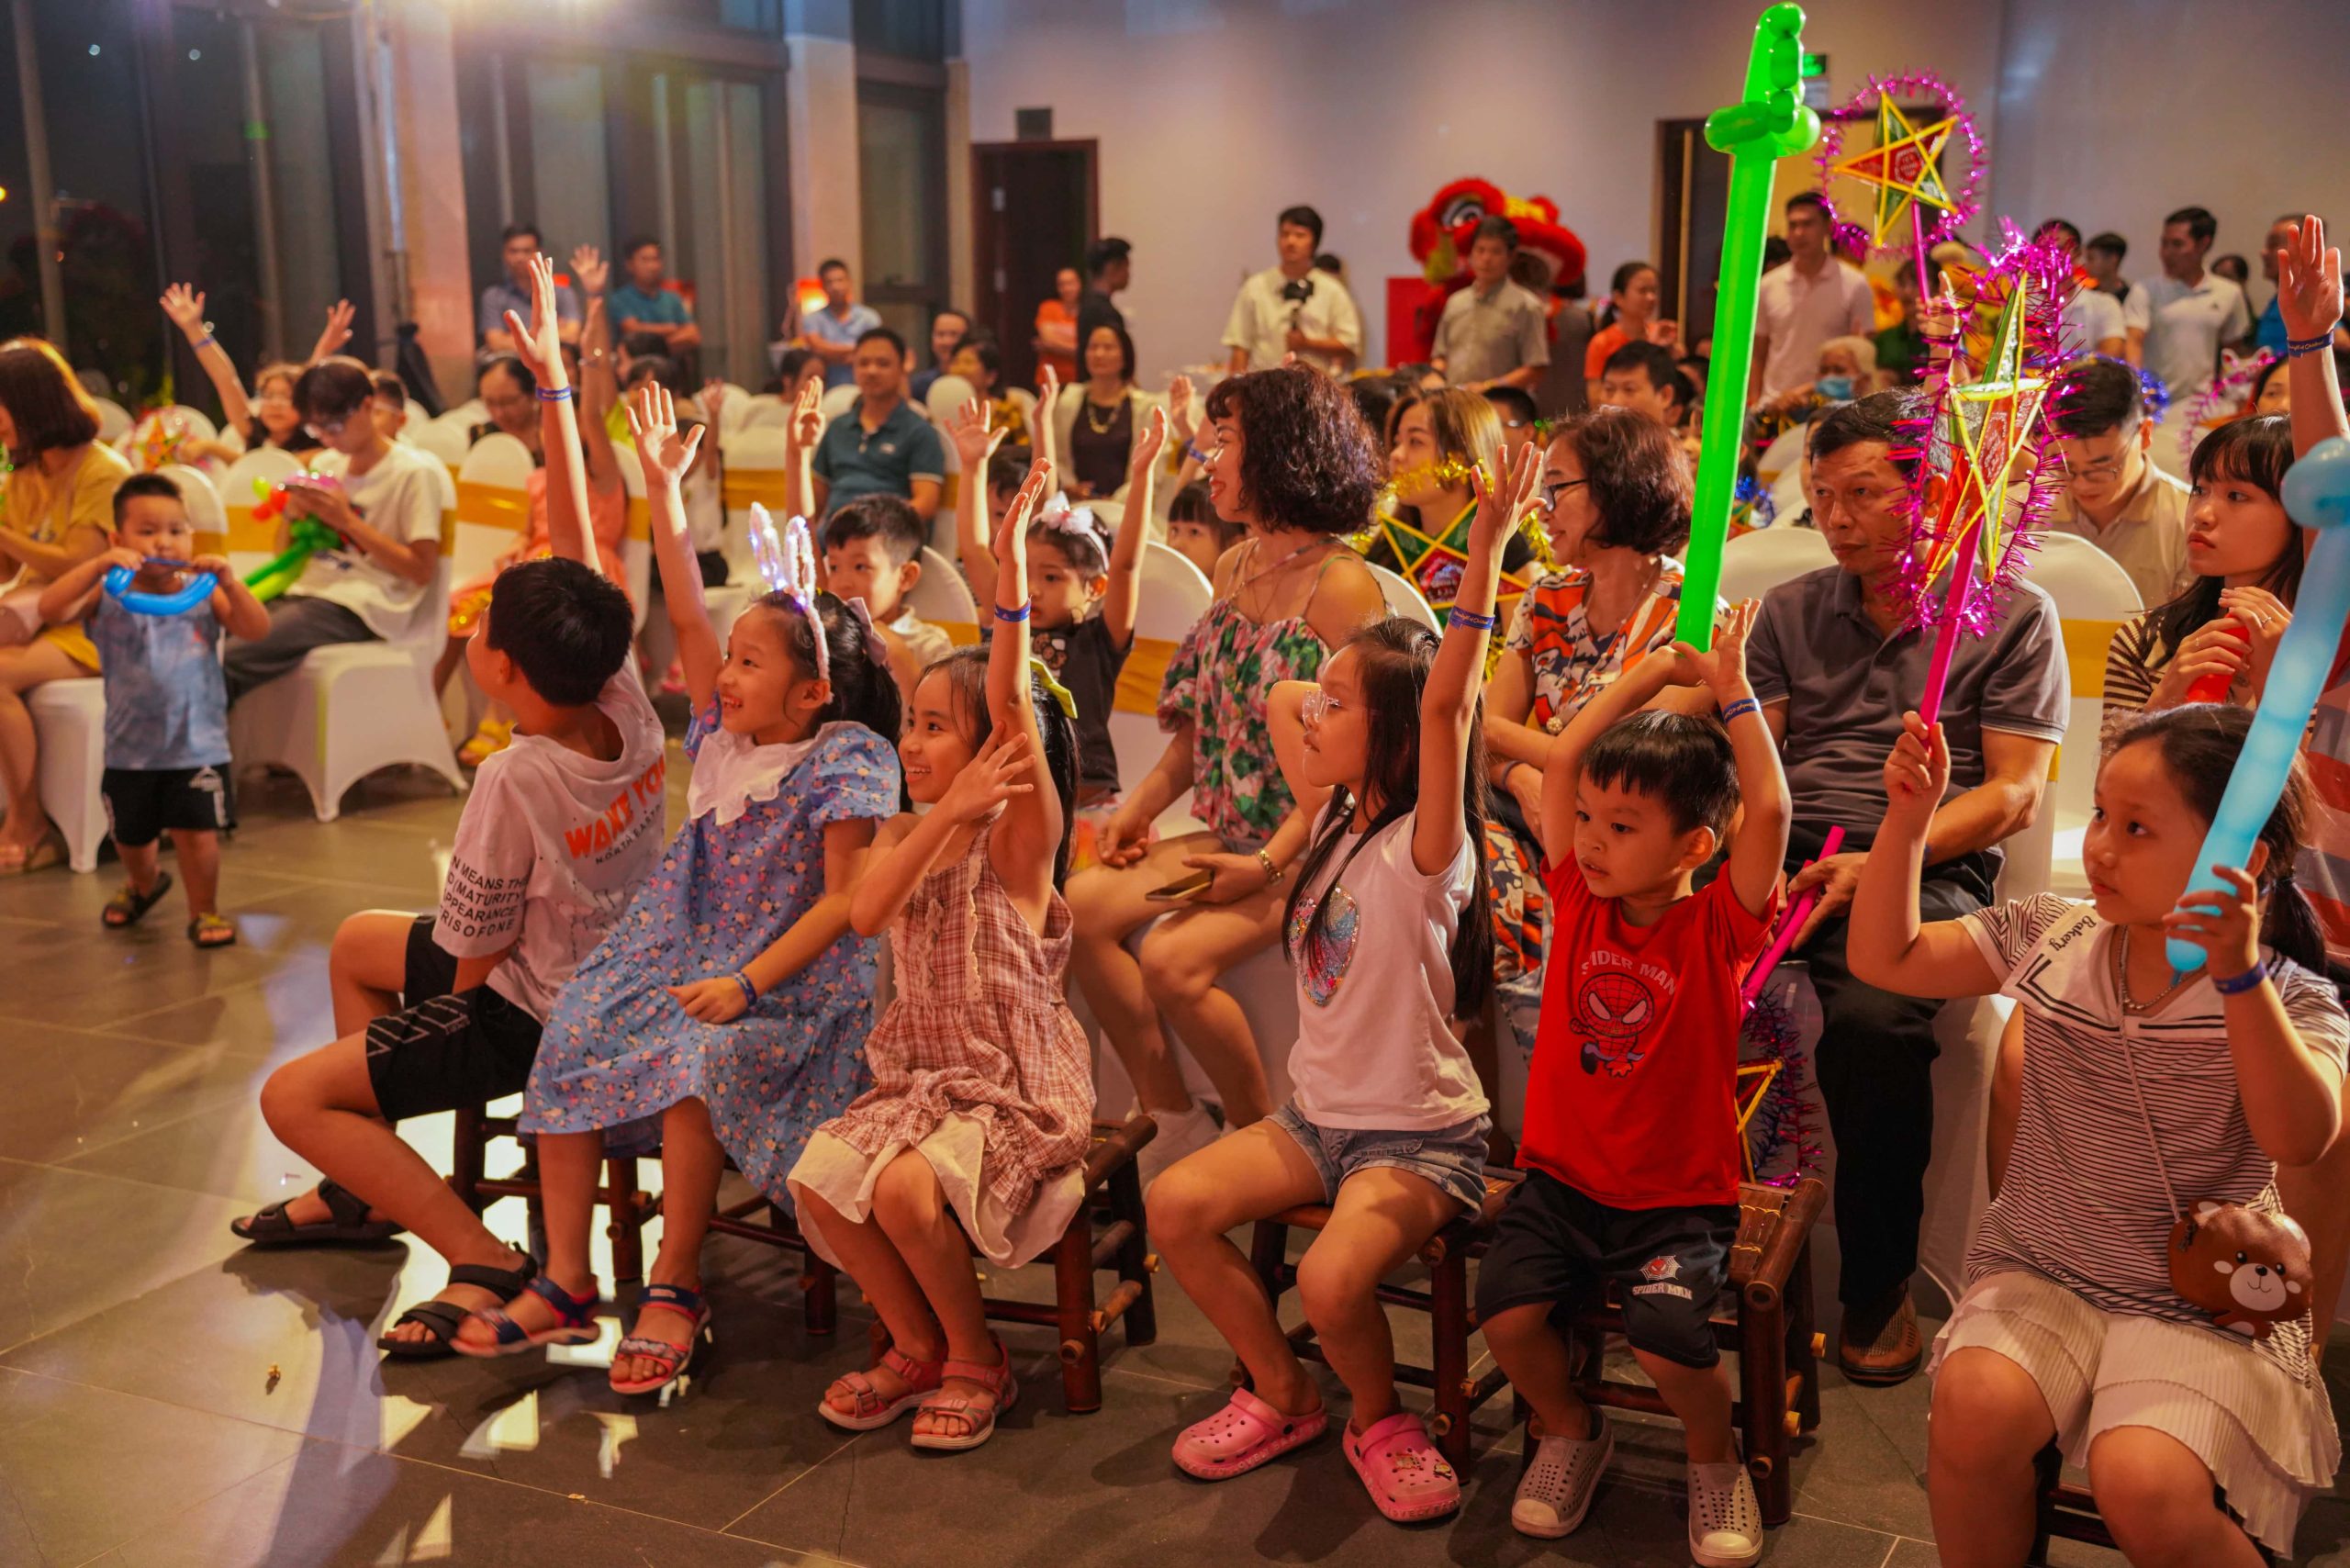 Tập đoàn An Lạc tổ chức đêm hội “Ánh trăng tuổi thơ” tại KĐT Anlac Green Symphony